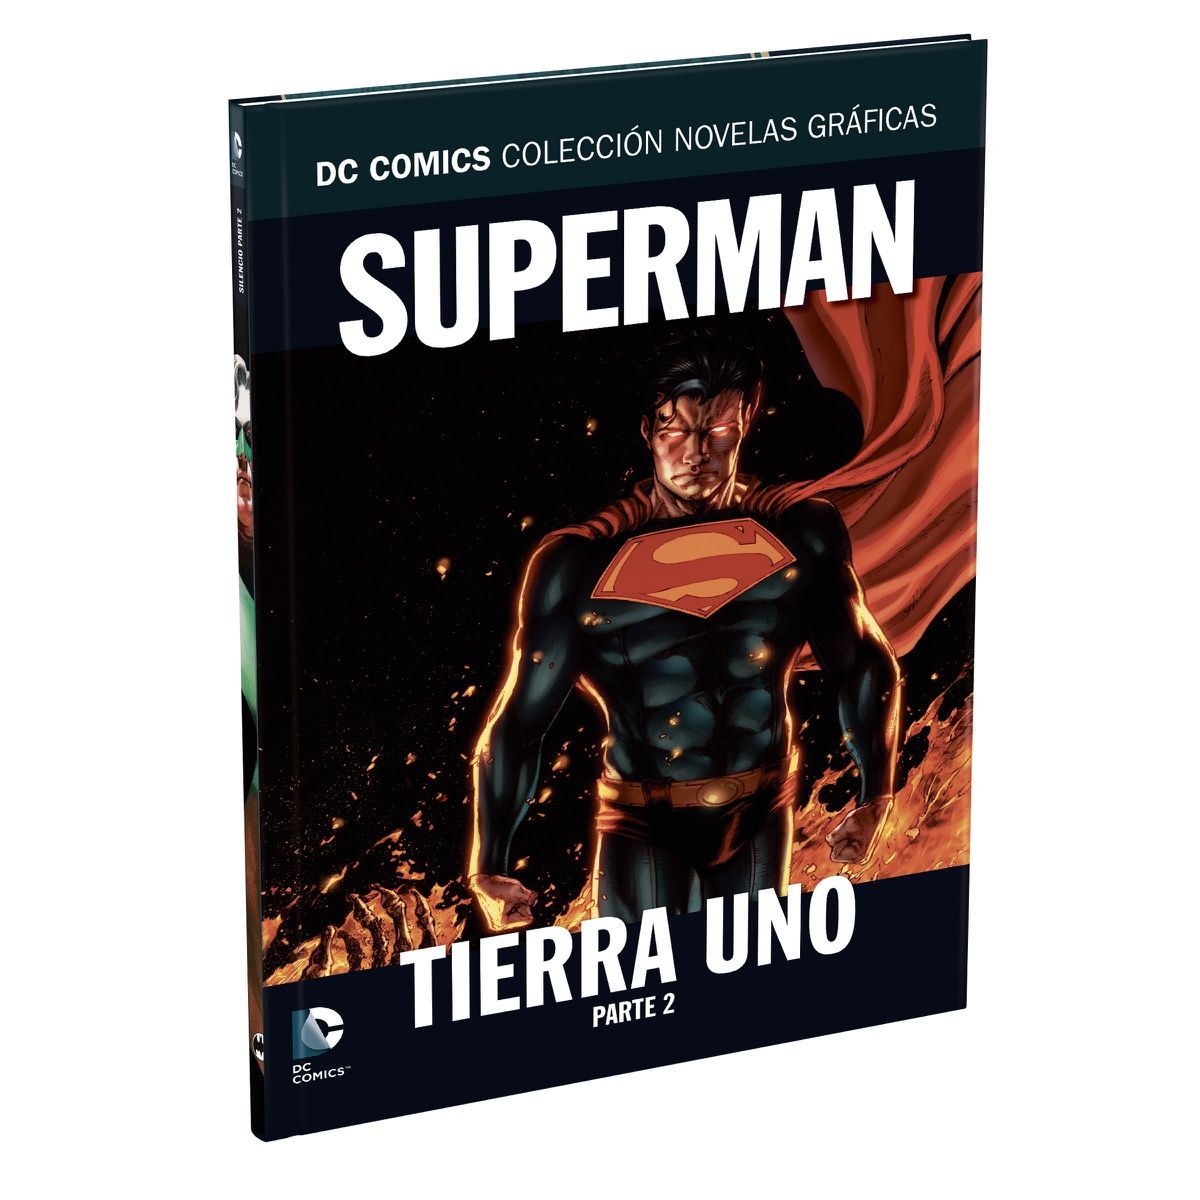 Reducción de precios ego candidato Salida 13 - Superman: Tierra Uno Parte 2 - La Coleccion Novelas Graficas DC  Comics - La Tienda de Comics